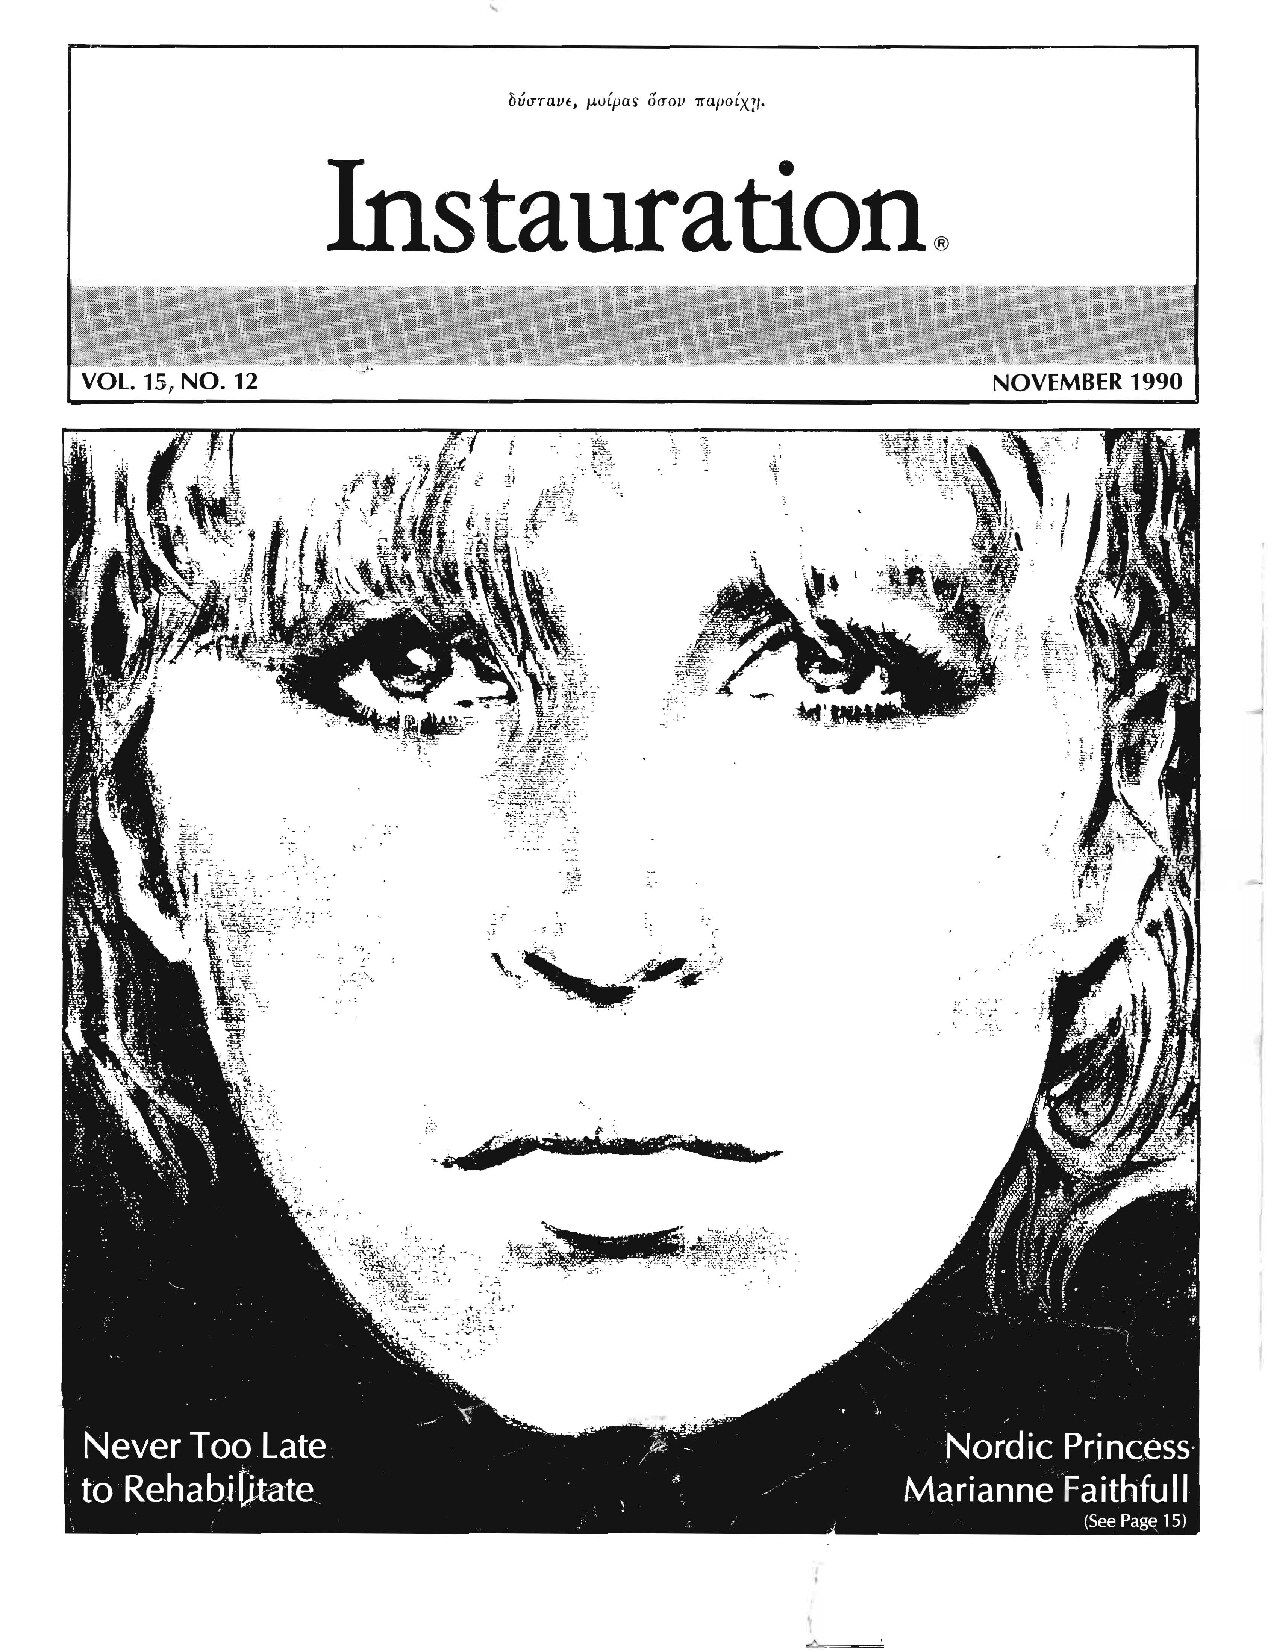 Instauration-1990-11-November-Vol15-No12